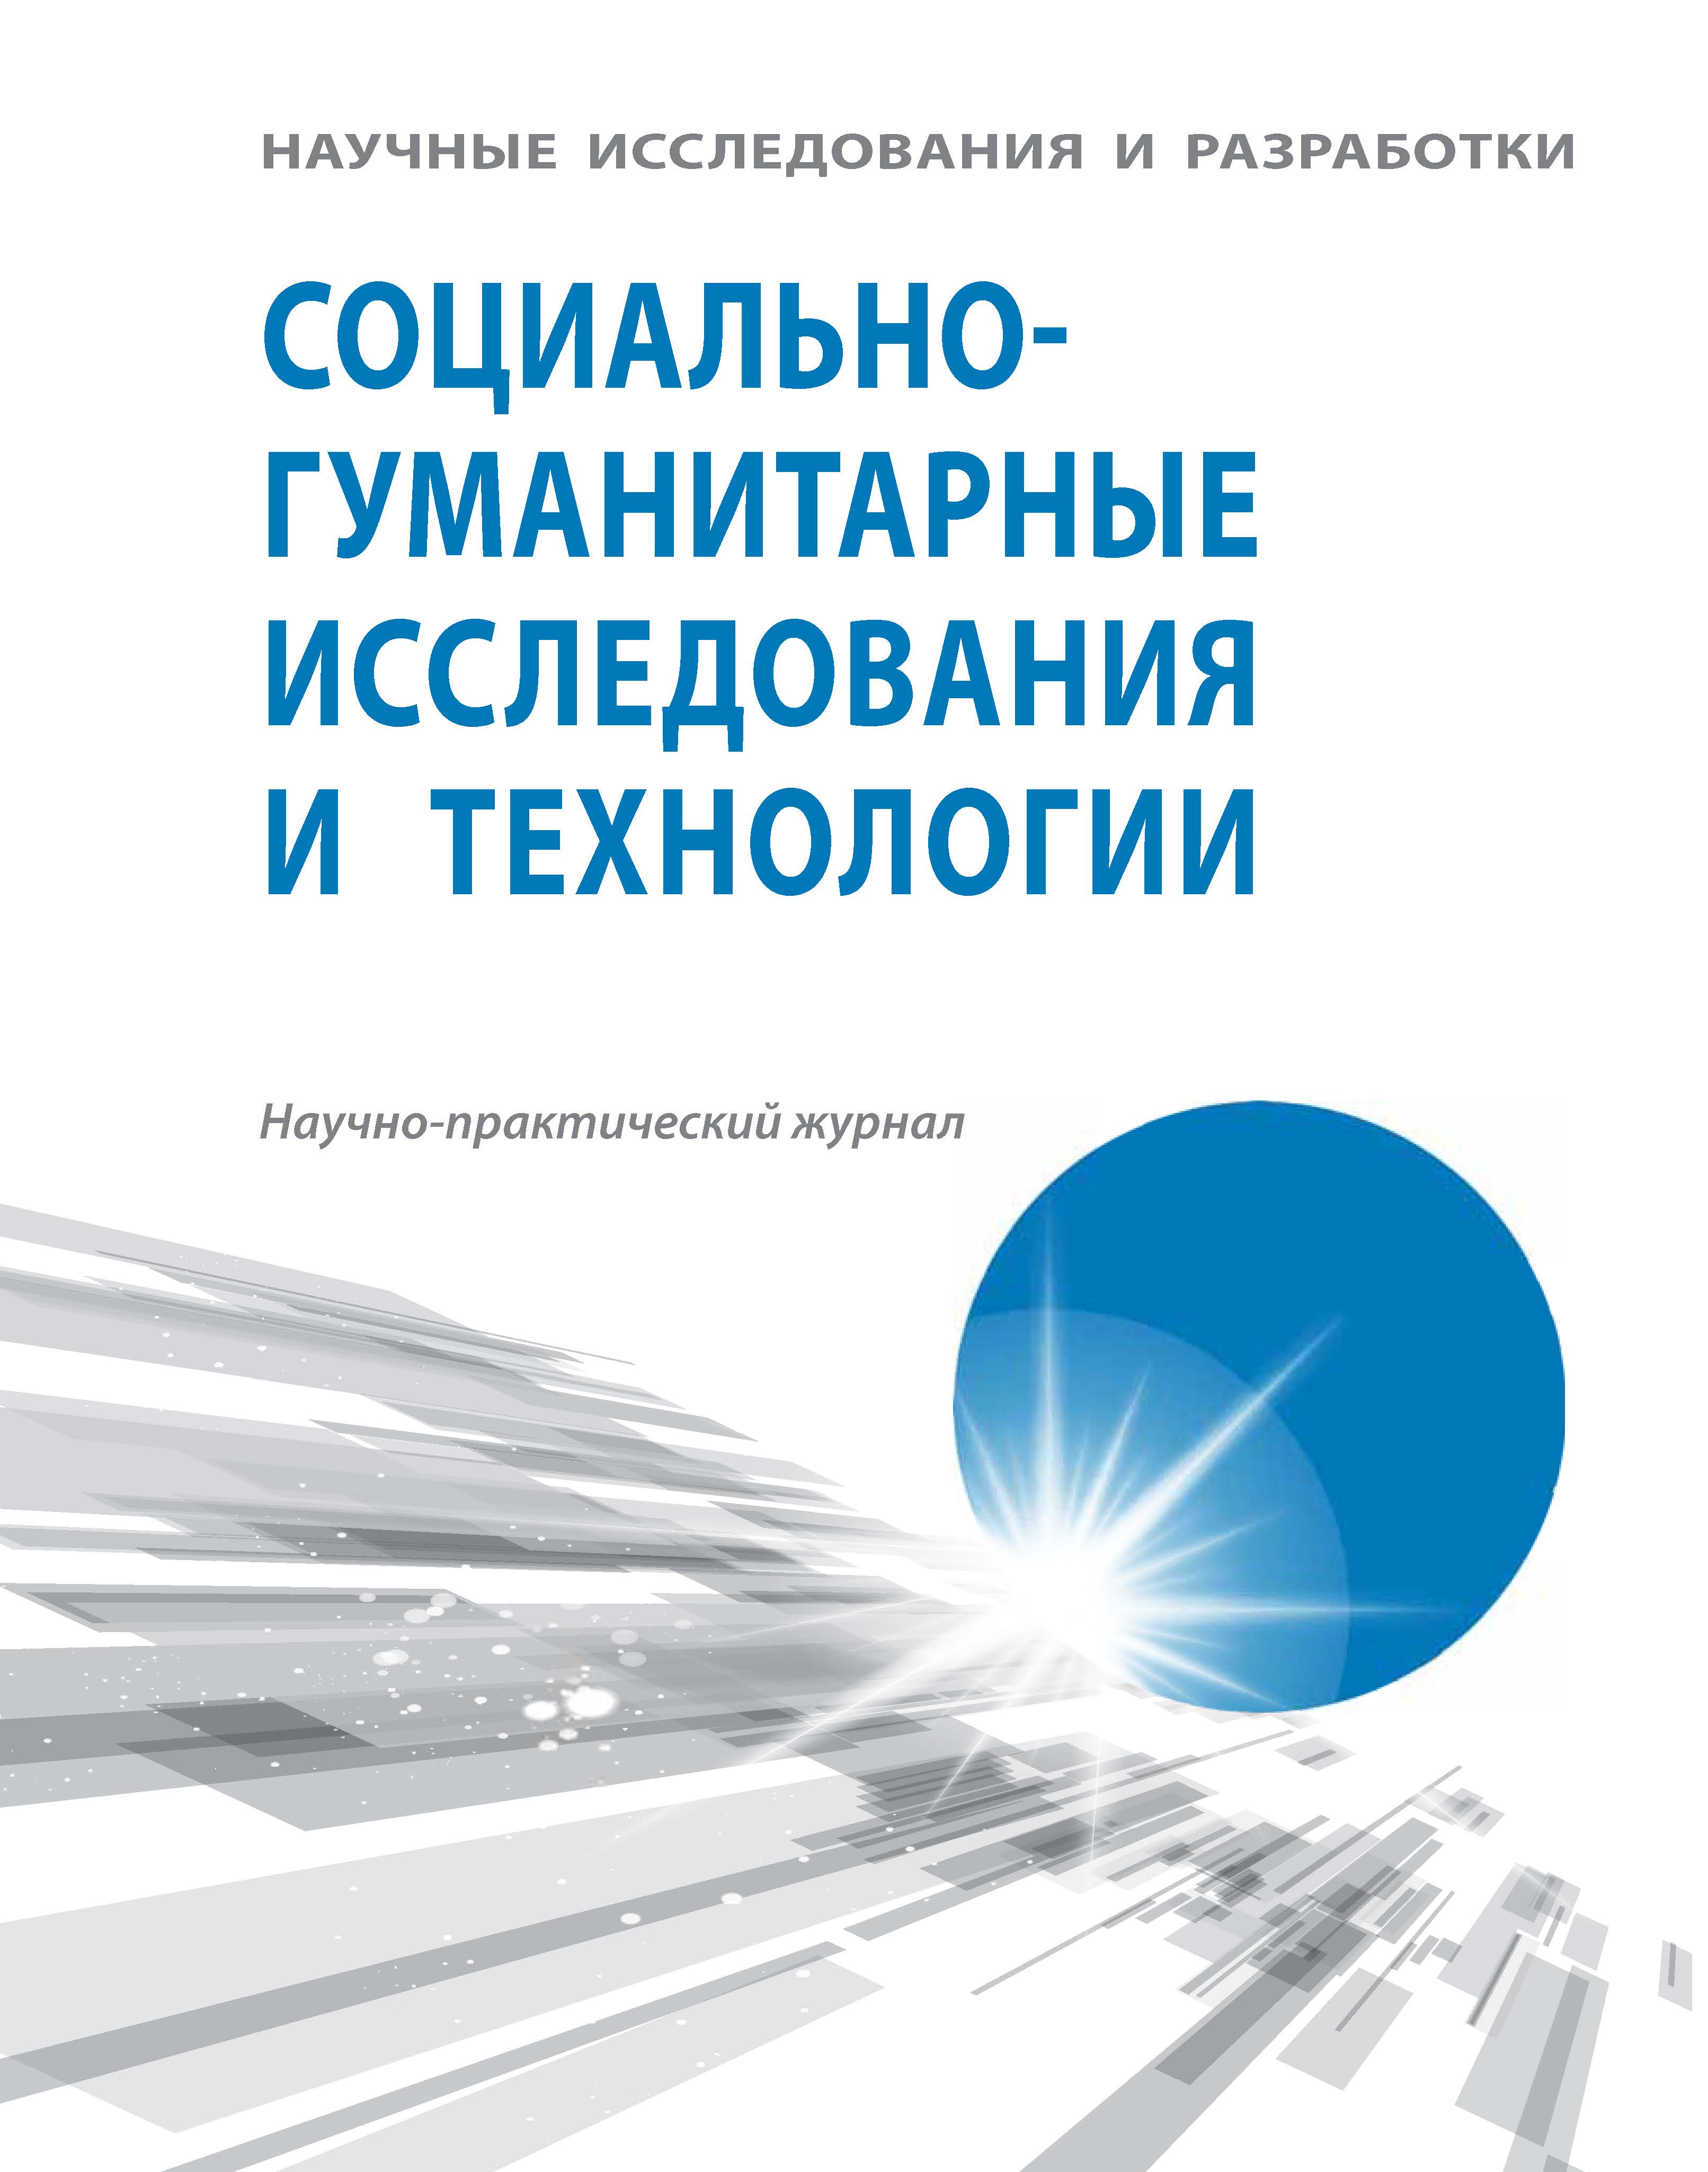             Технологический суверенитет, образование и наука – факторы национальной безопасности РФ (В.В. Путин)
    